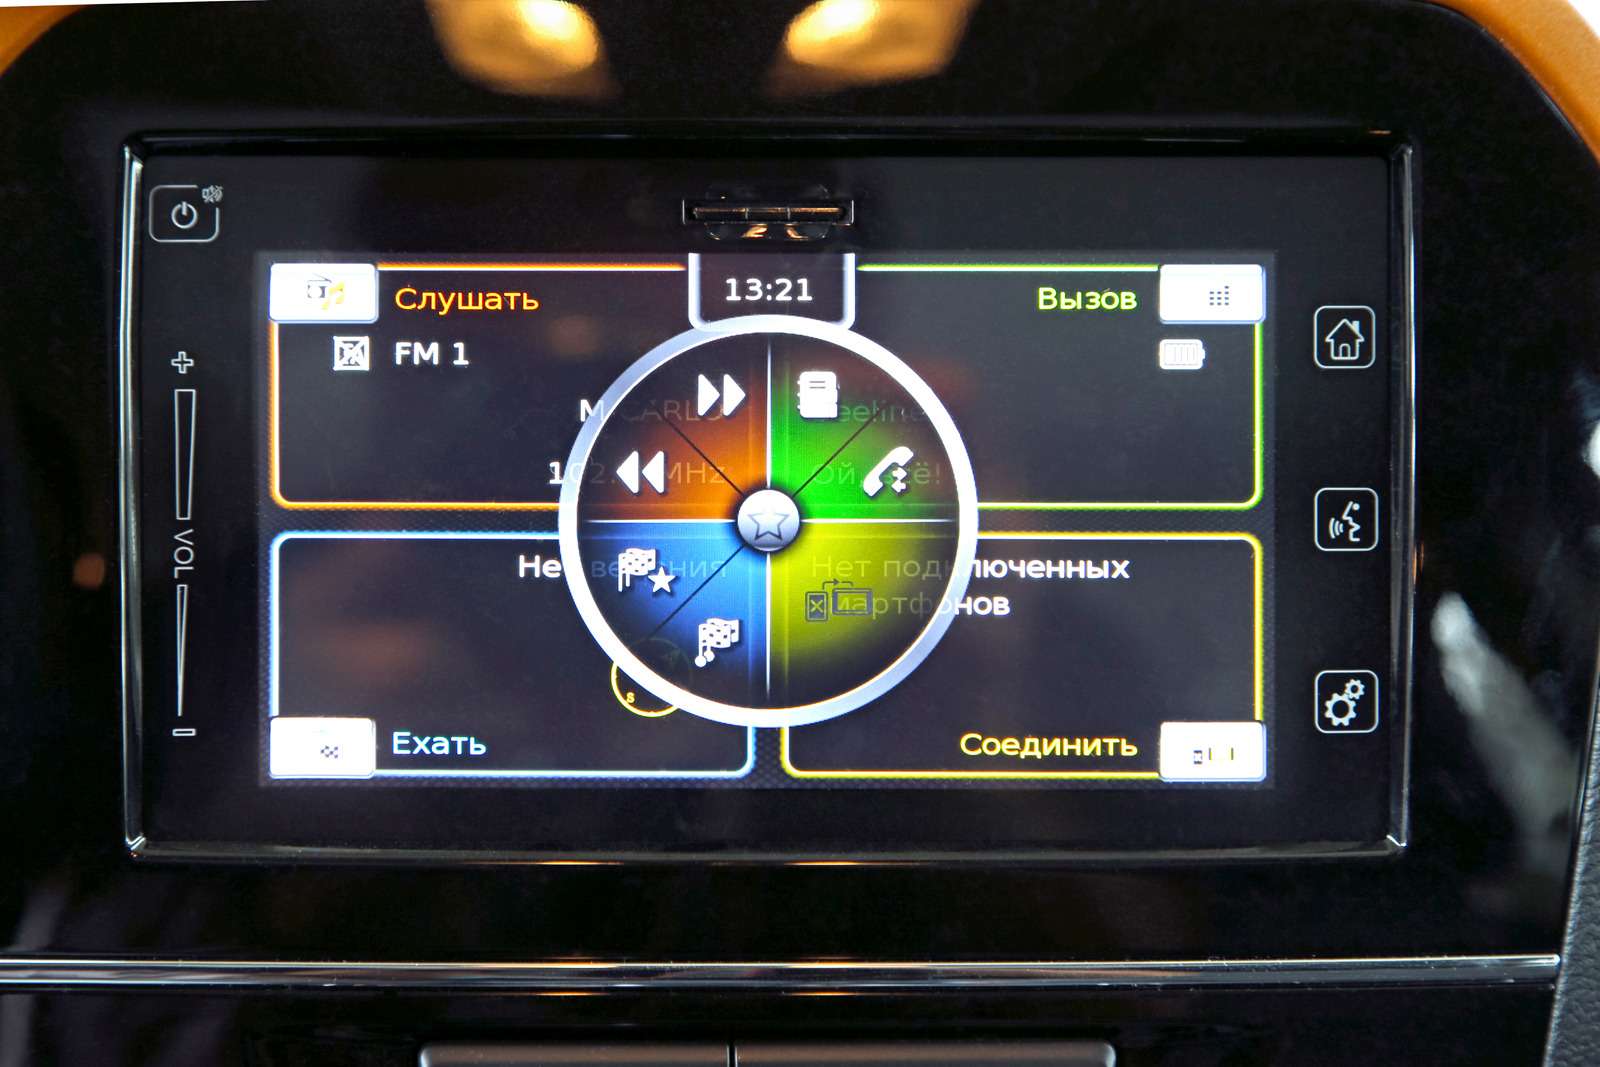 Suzuki Vitara. Экран Витары разделен на четыре функциональные зоны – по аналогии с фордовской системой SYNC 2.